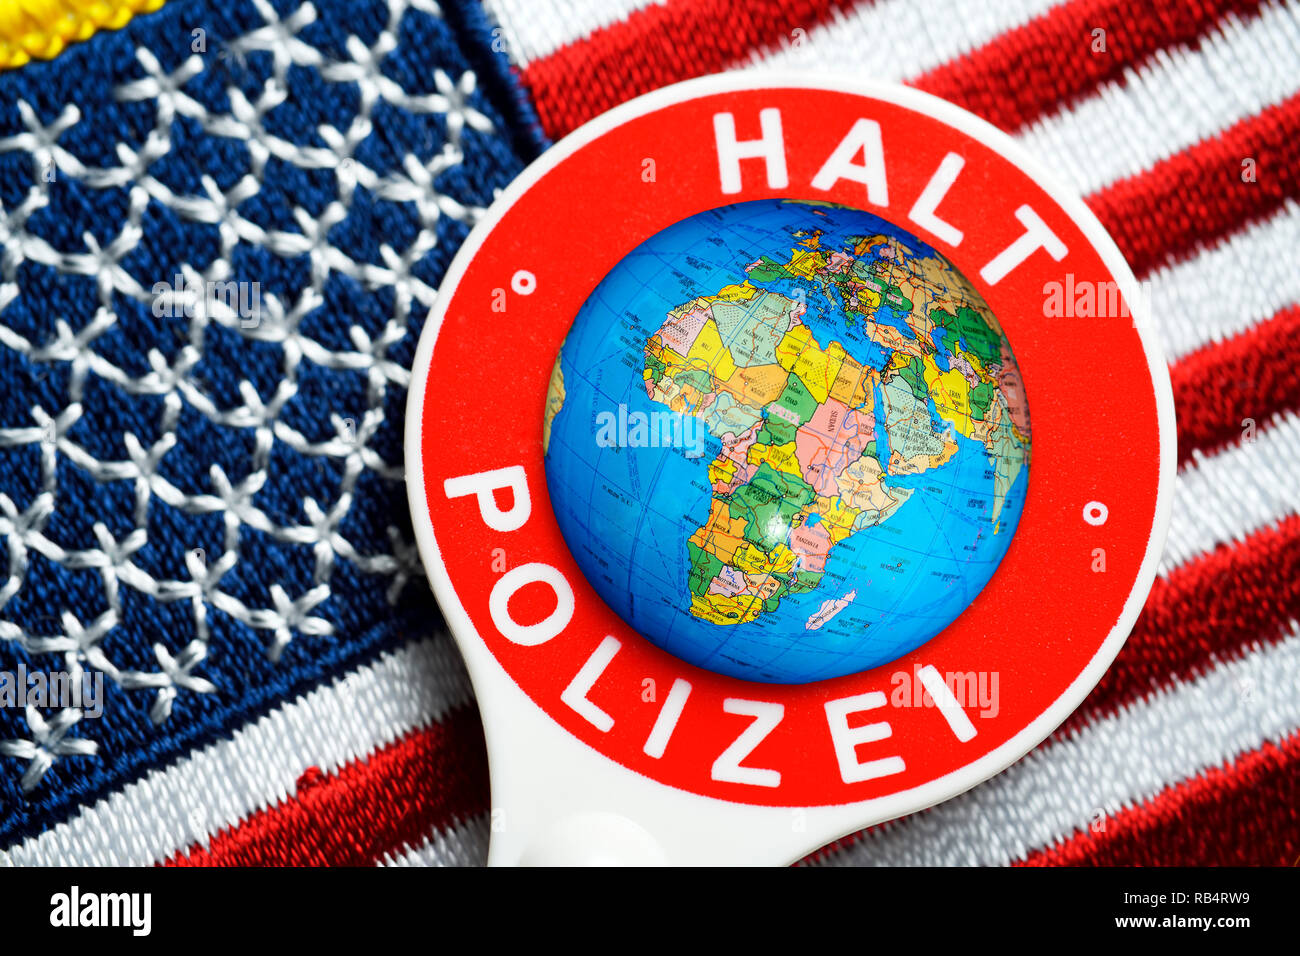 US flag and signalling disc, global policeman USA Stock Photo